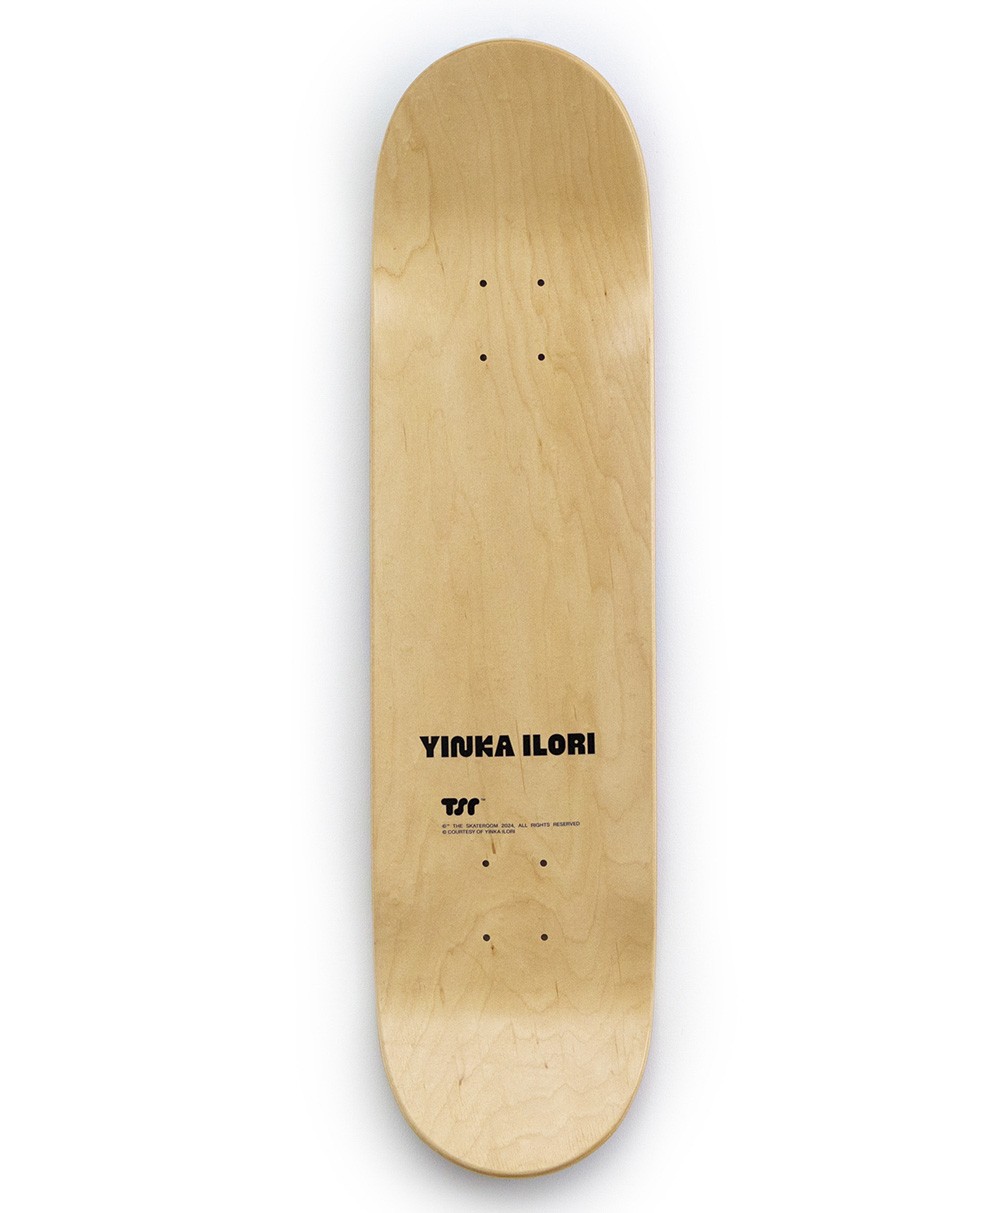 Dieses Produktbild zeigt das Skateboard Kunstobjekt x Yinka Ilori If you can Dream then anything is possible von The Skateroom im RAUM concept store.